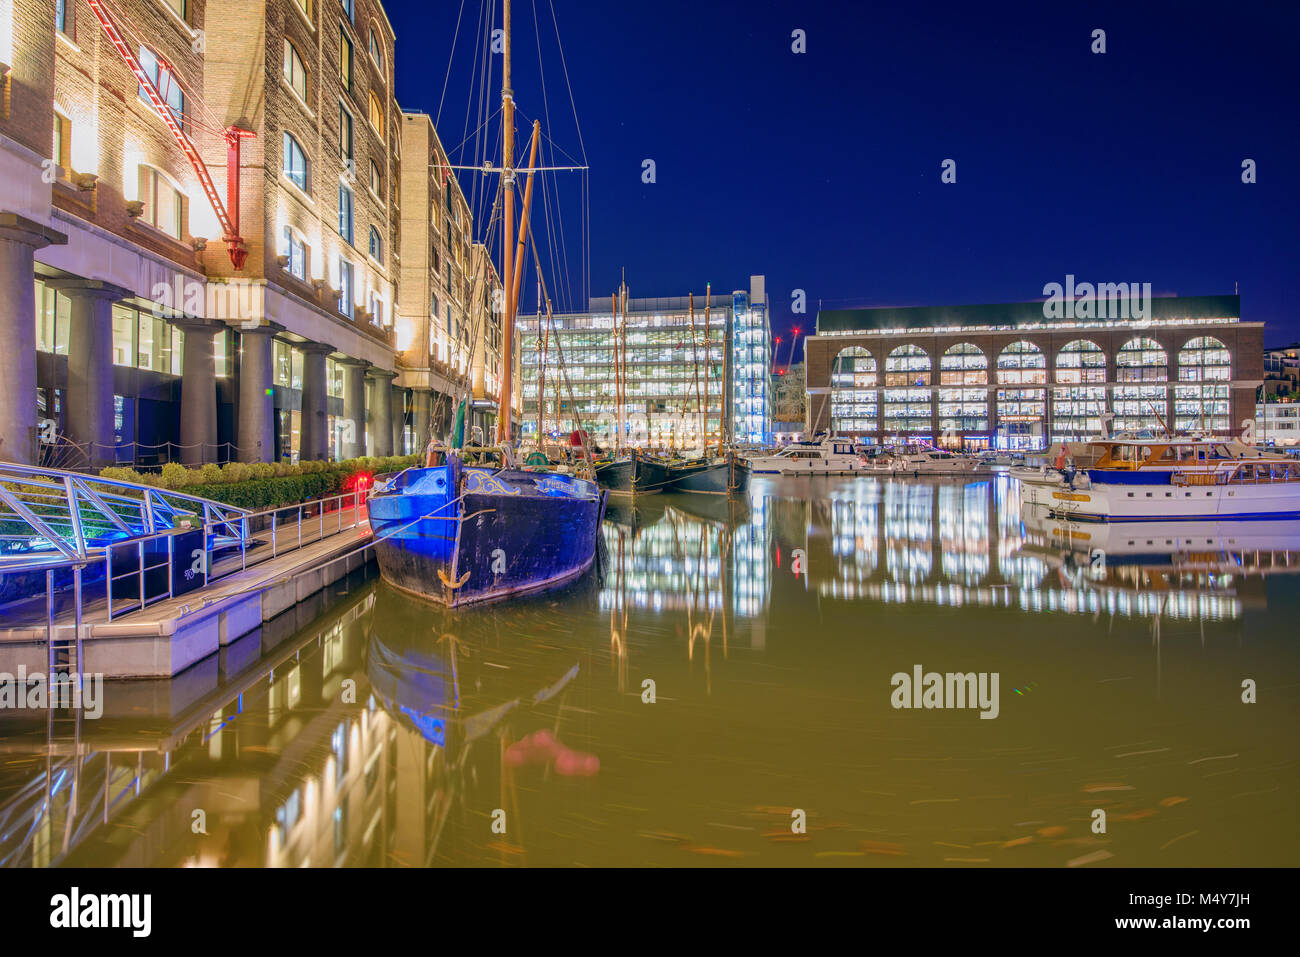 LONDON, GROSSBRITANNIEN - 05 Januar: Dies ist eine Nacht Blick auf die berühmte St. Katharine Docks, ein Büro und Hafen im Zentrum von London am 05. Januar Stockfoto